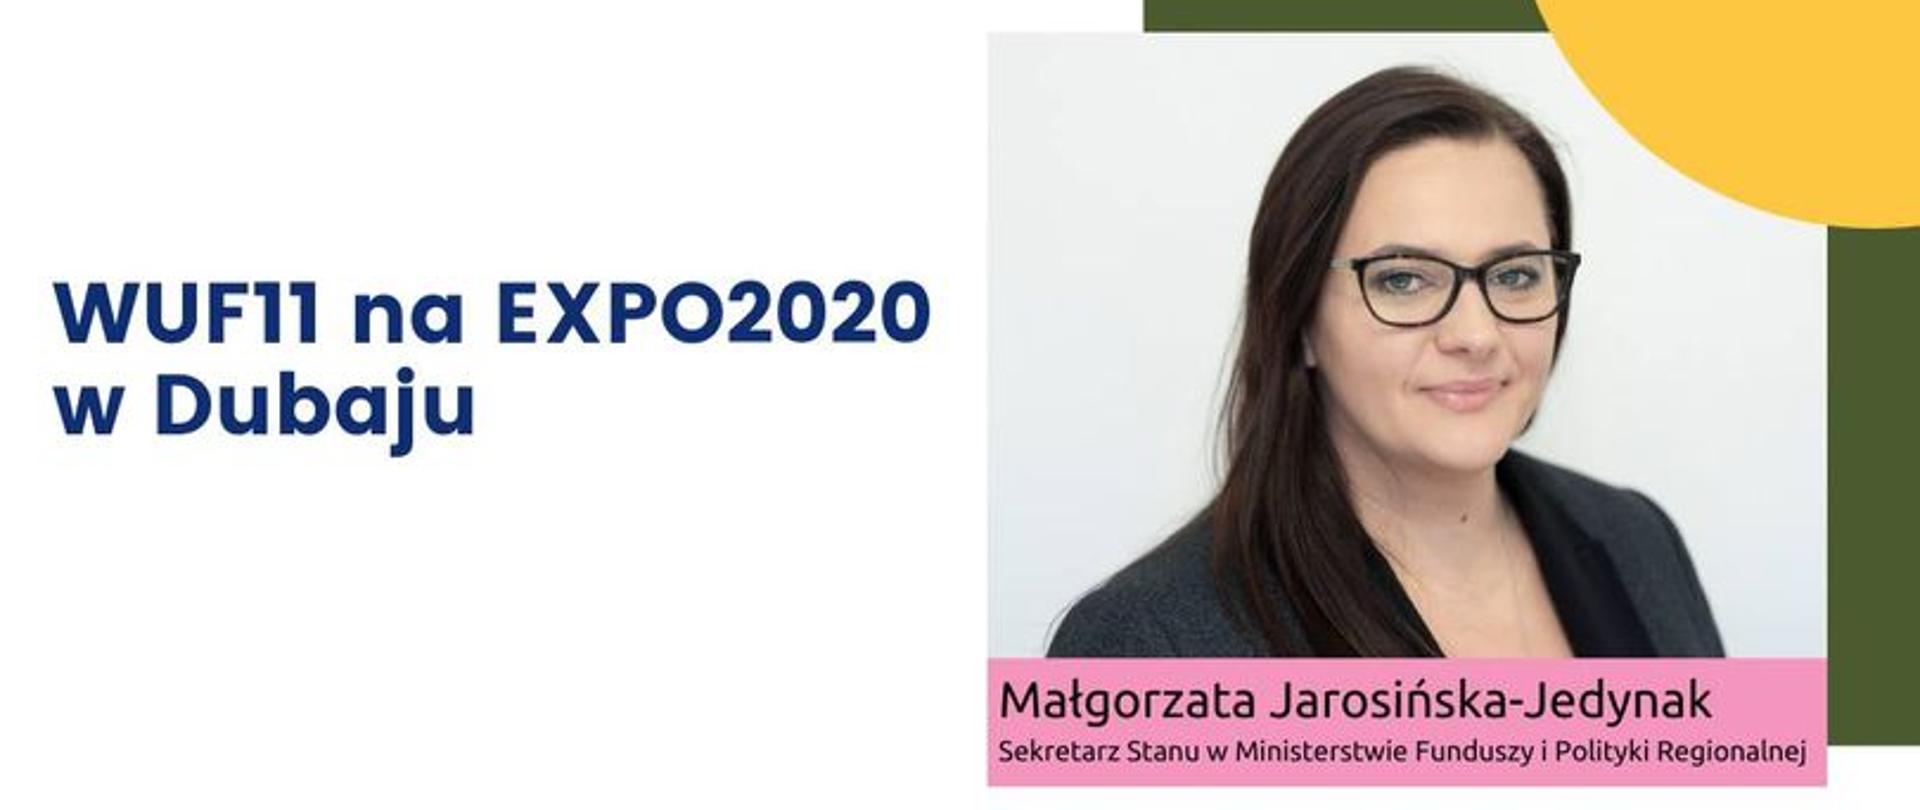 Zdjęcie minister Małgorzaty Jarosińskiej Jedynak i informacja o WUF11 na Expo2020 w Dubaju na dole grafiki logotypy 